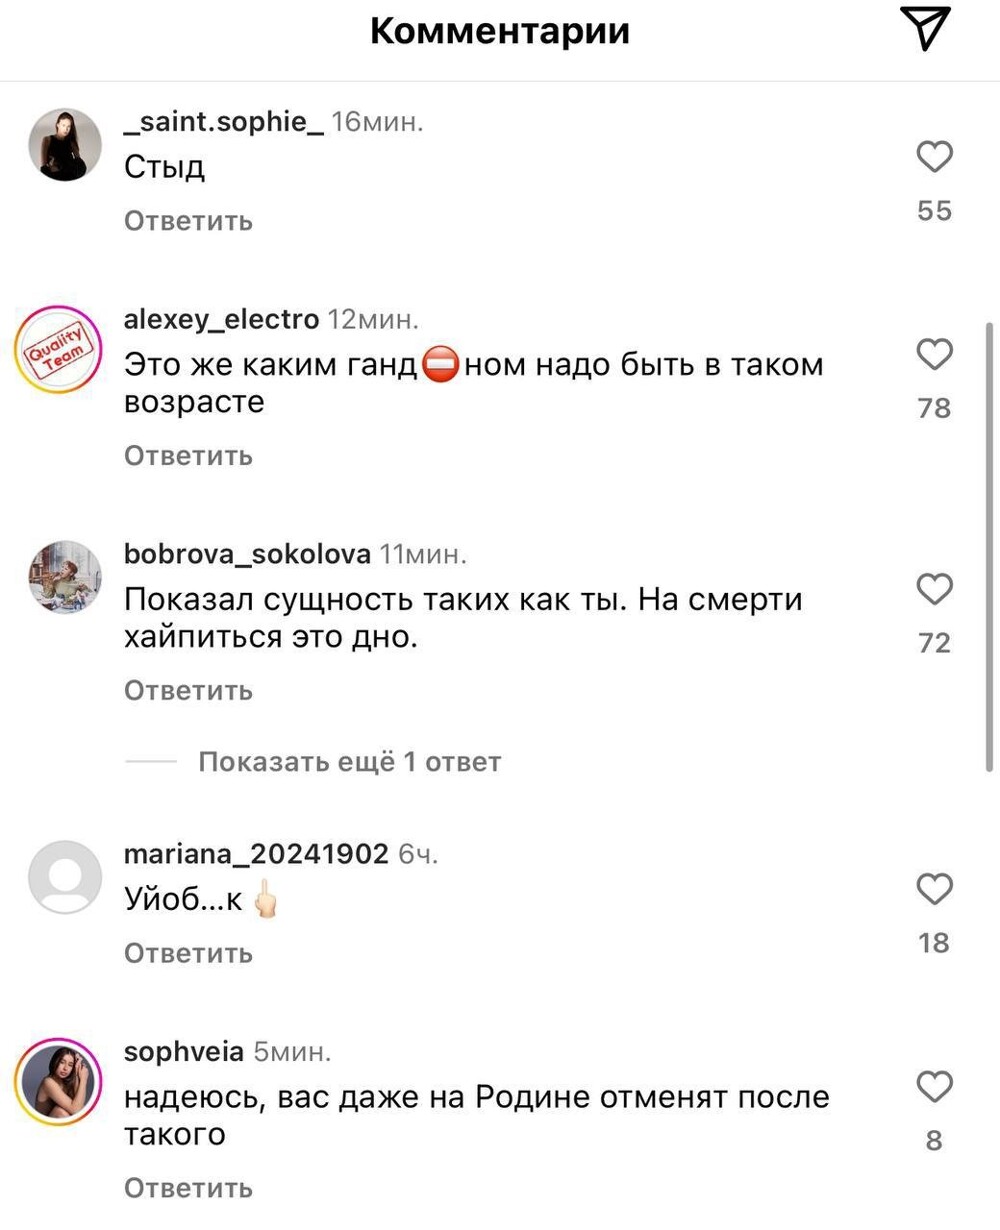 "Просто животное": интернет-пользователи раскритиковали украинского артиста Потапа, поглумившегося над смертью Заворотнюк